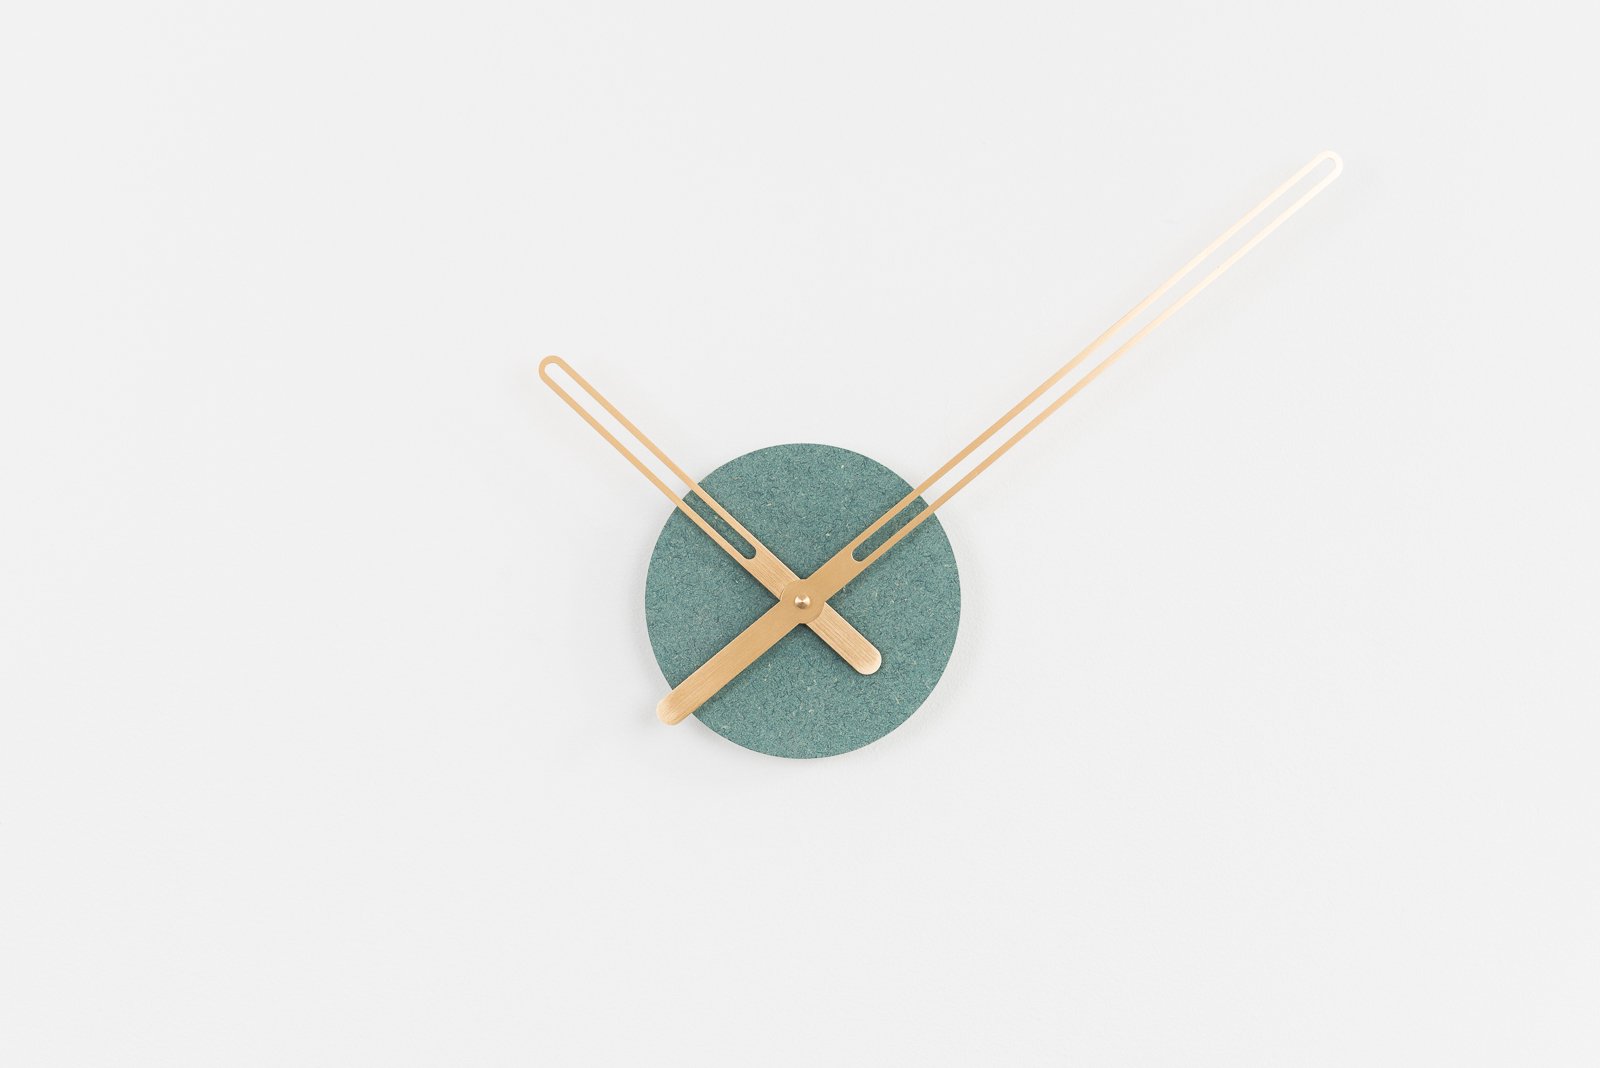 Sweep Wall Clock, The Green Ocher Series with Brass Clock Hands, Minimalist Scandinavian Design Wall Decor Clock by Christopher Nordahl Konings